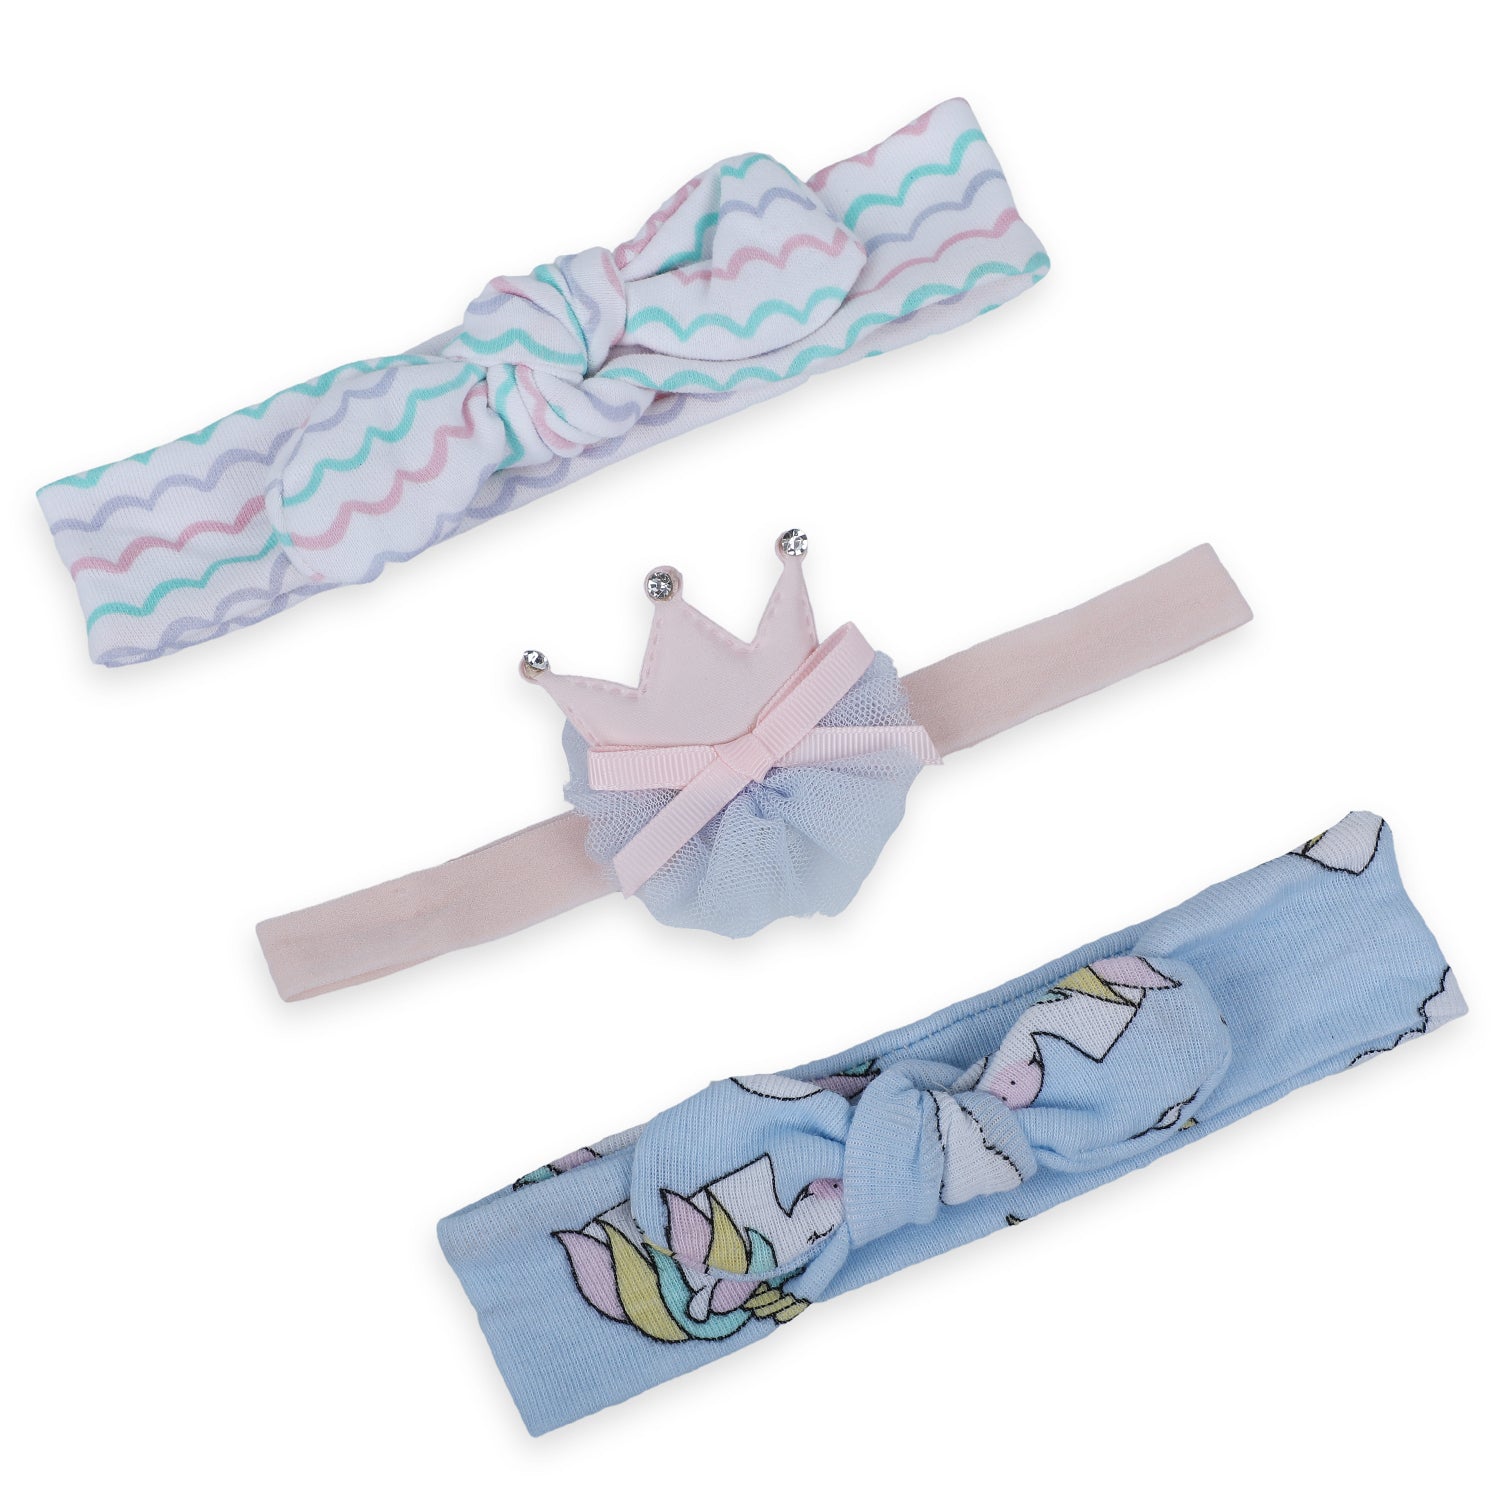 Baby Moo Unicorn Bow Headband Set of 3 - Multicolour - Baby Moo